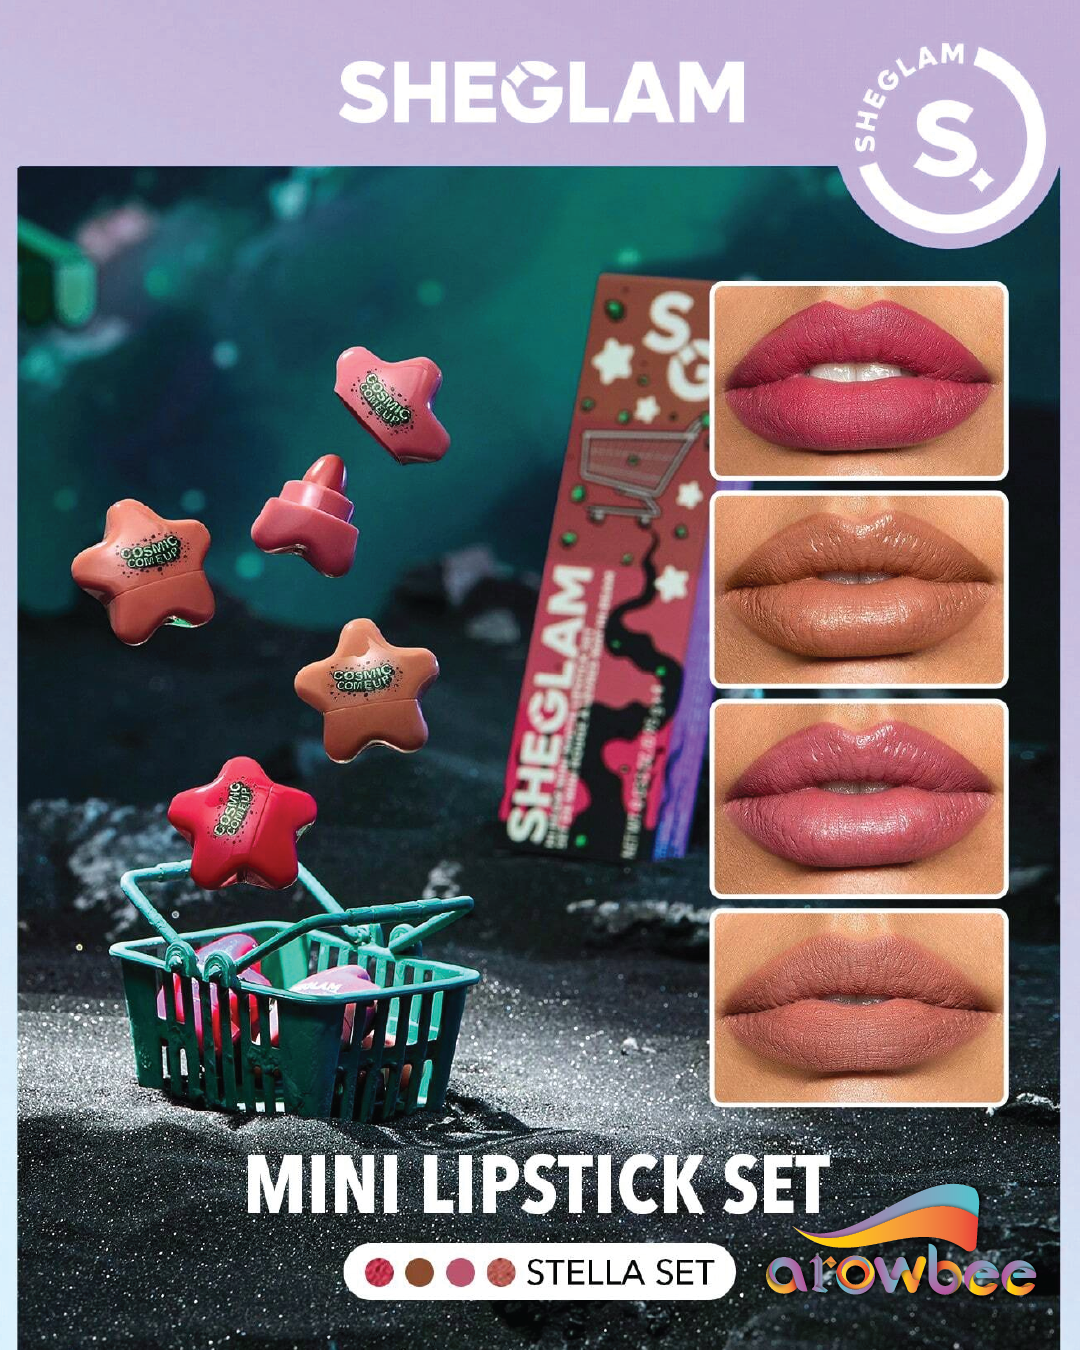 SHEGLAM Hi-Beam Mini Lipstick Set